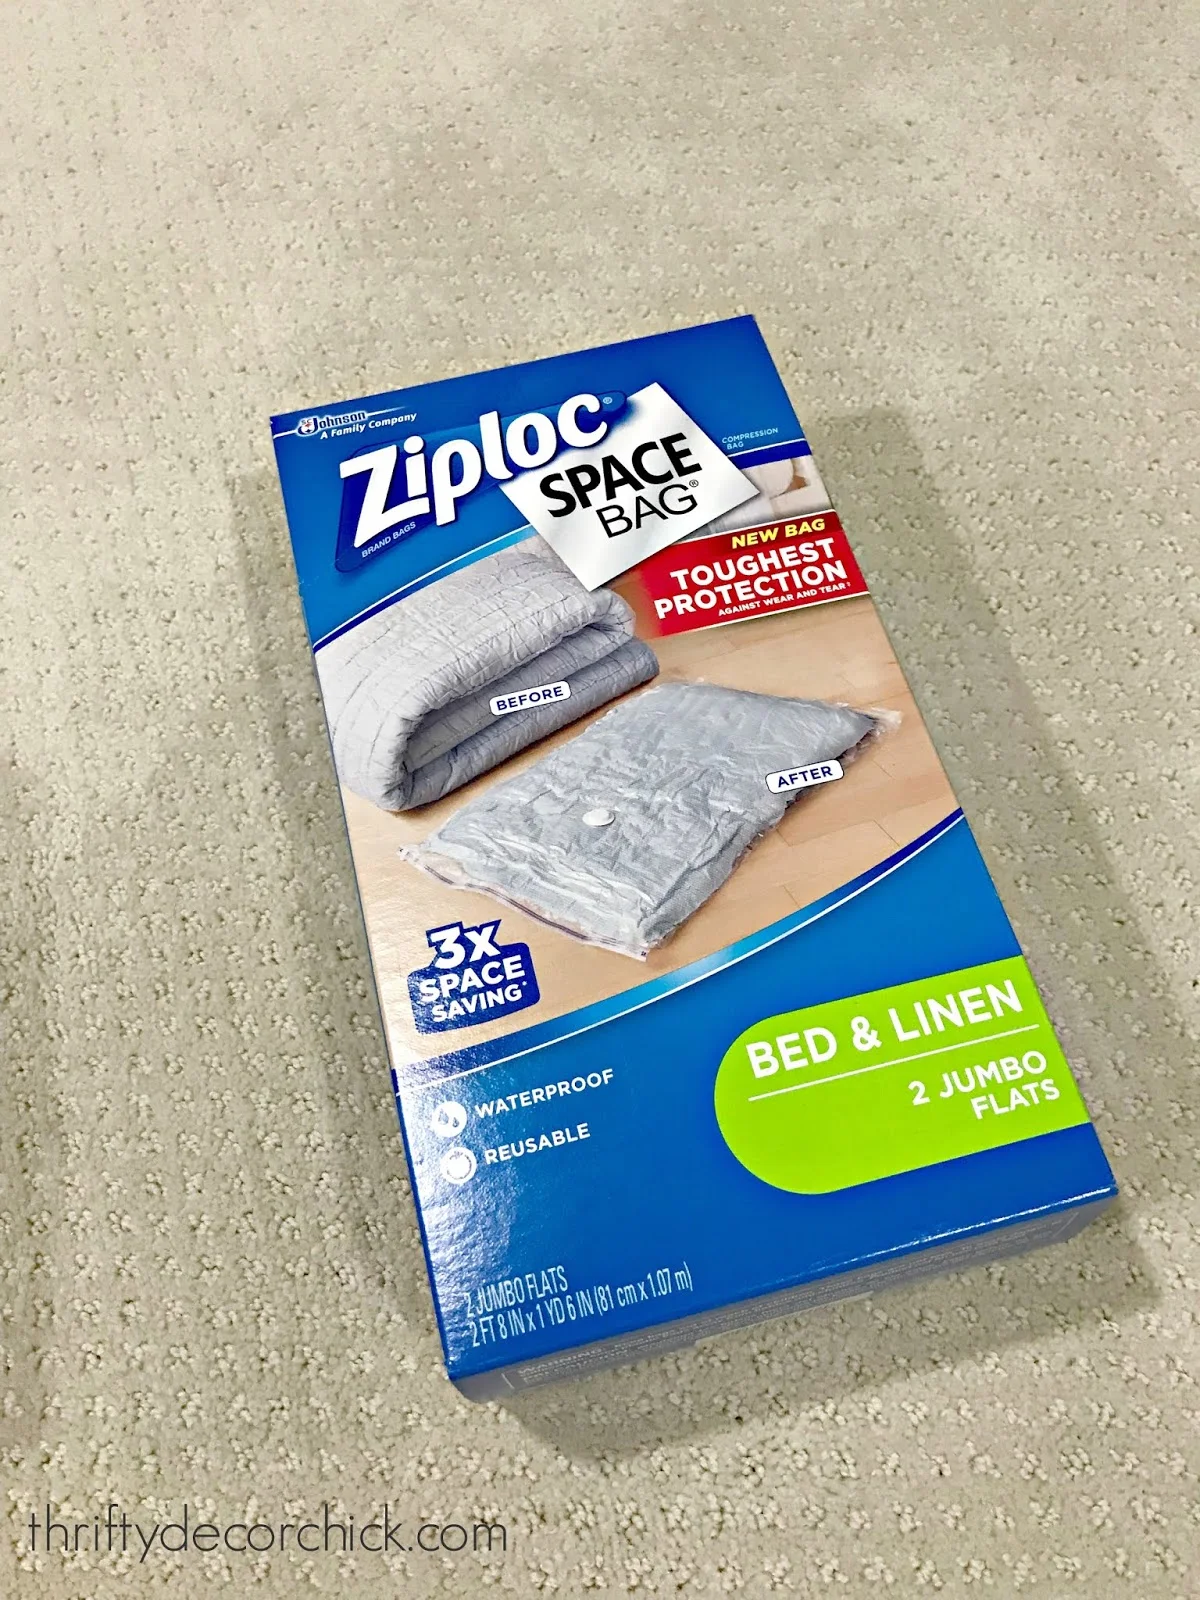 Ziploc vacuum space bags